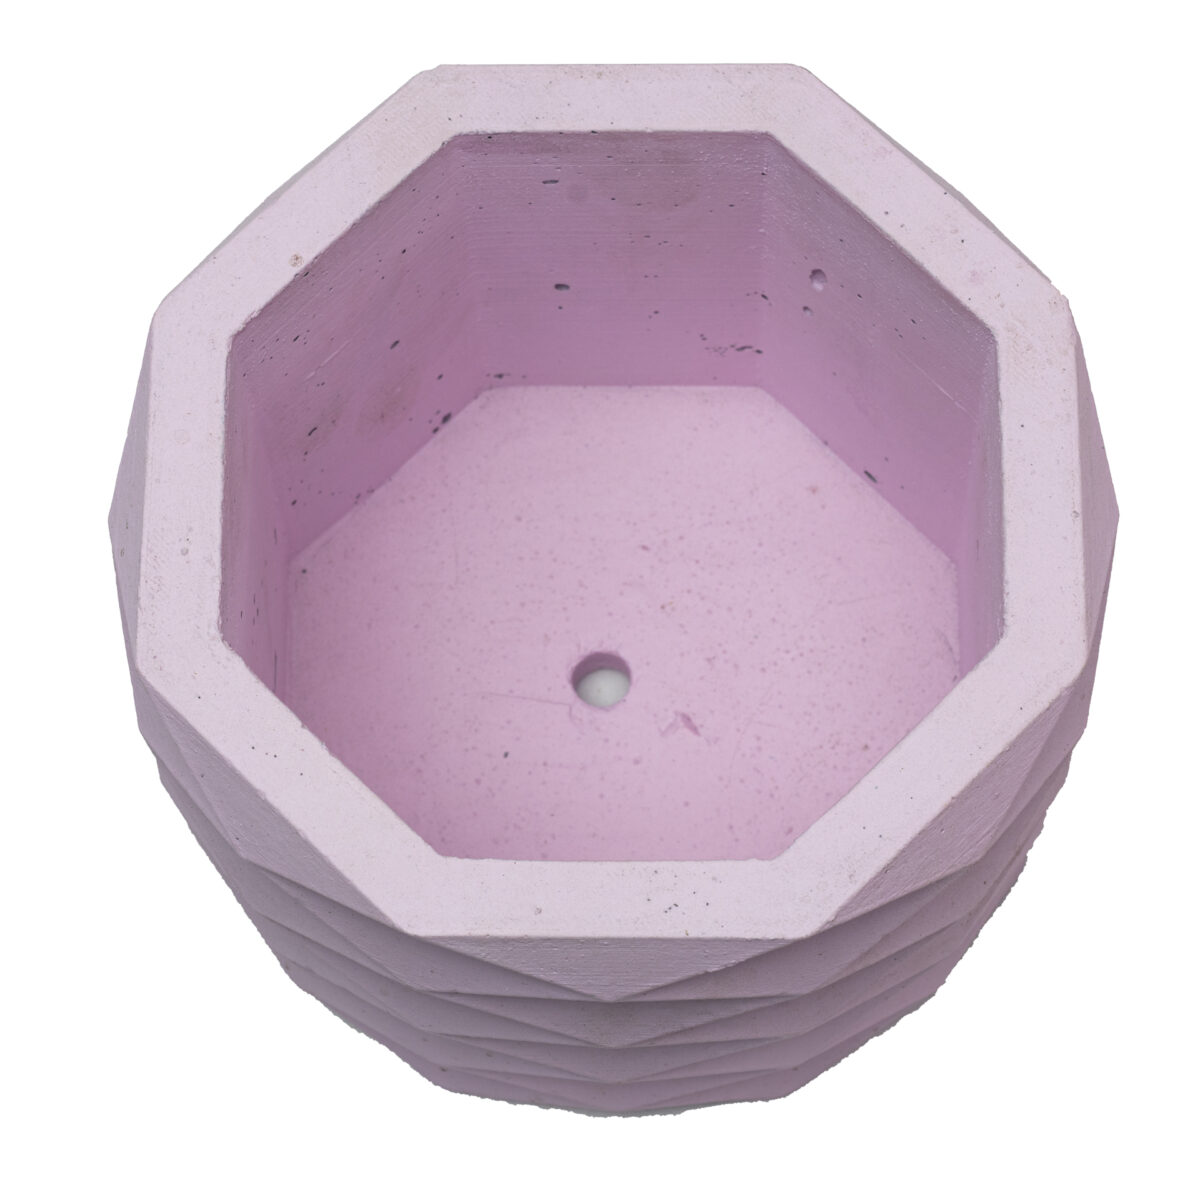 Pink Hexagon Cement Concrete Pot